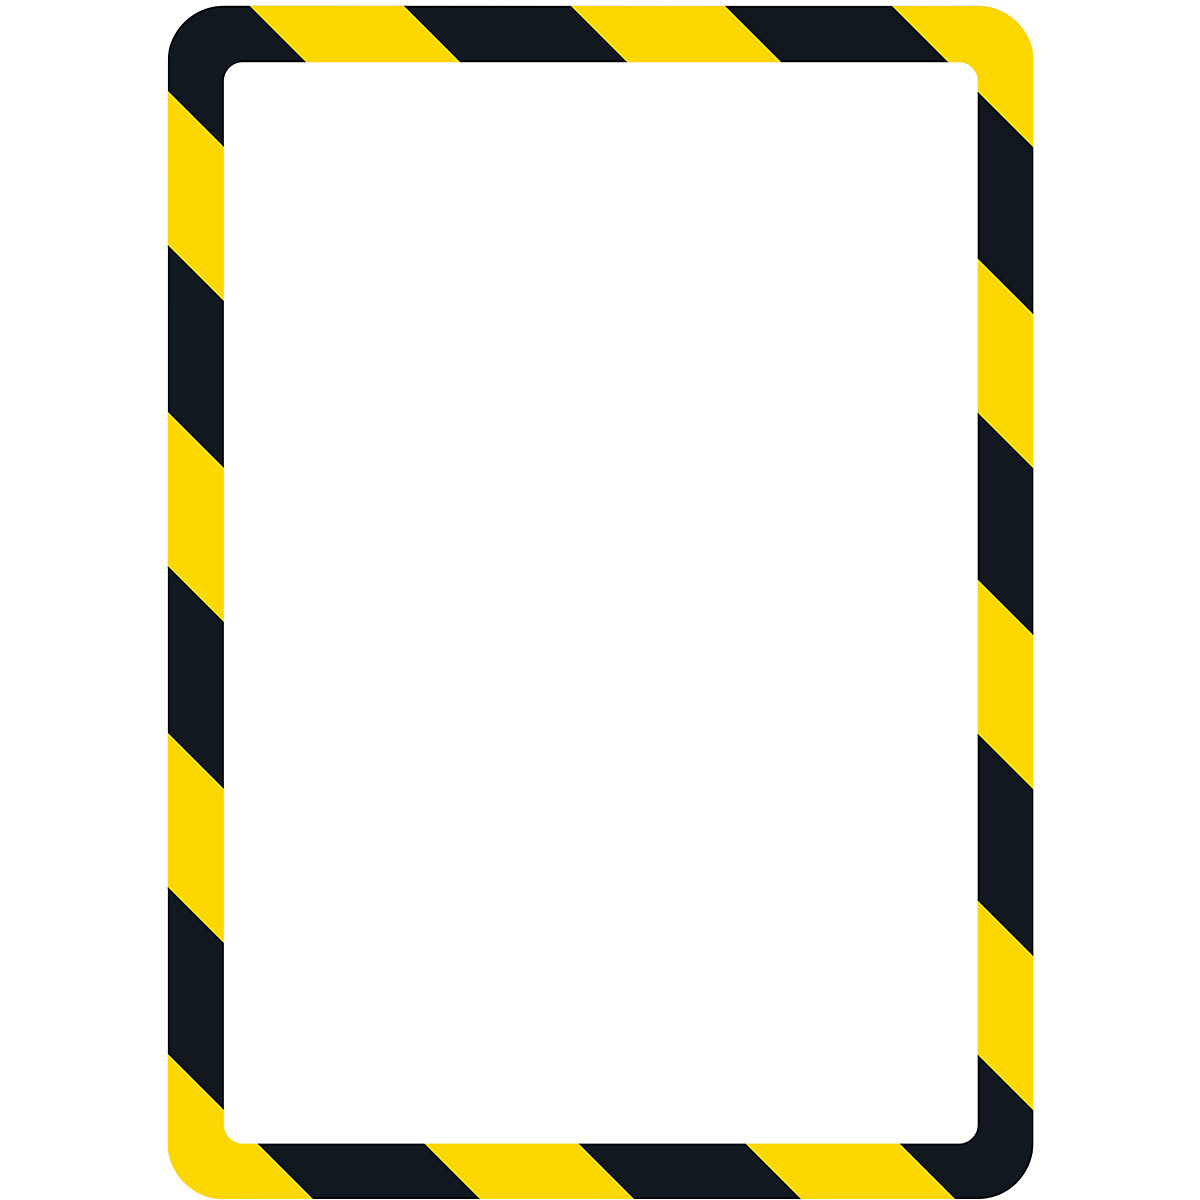 Tarifold – Husă transparentă de prezentare DIN A4, cu închidere magnetică, galben / negru, amb. 2 buc.